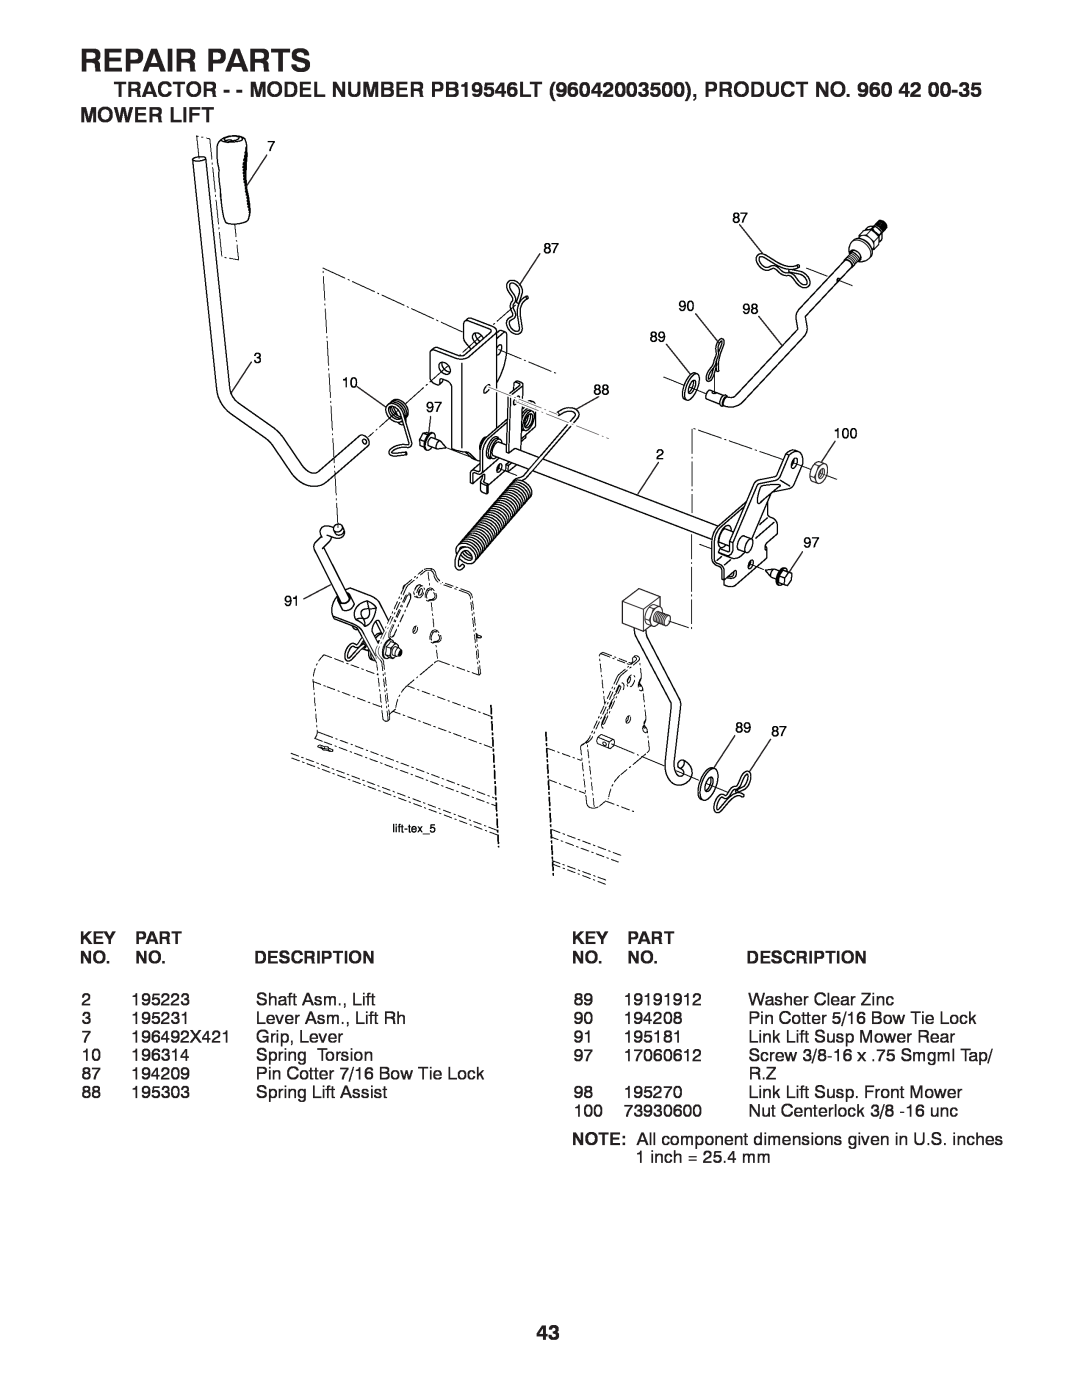 Poulan pb19546lt Mower Lift, Repair Parts, TRACTOR - - MODEL NUMBER PB19546LT 96042003500, PRODUCT NO. 960, Description 